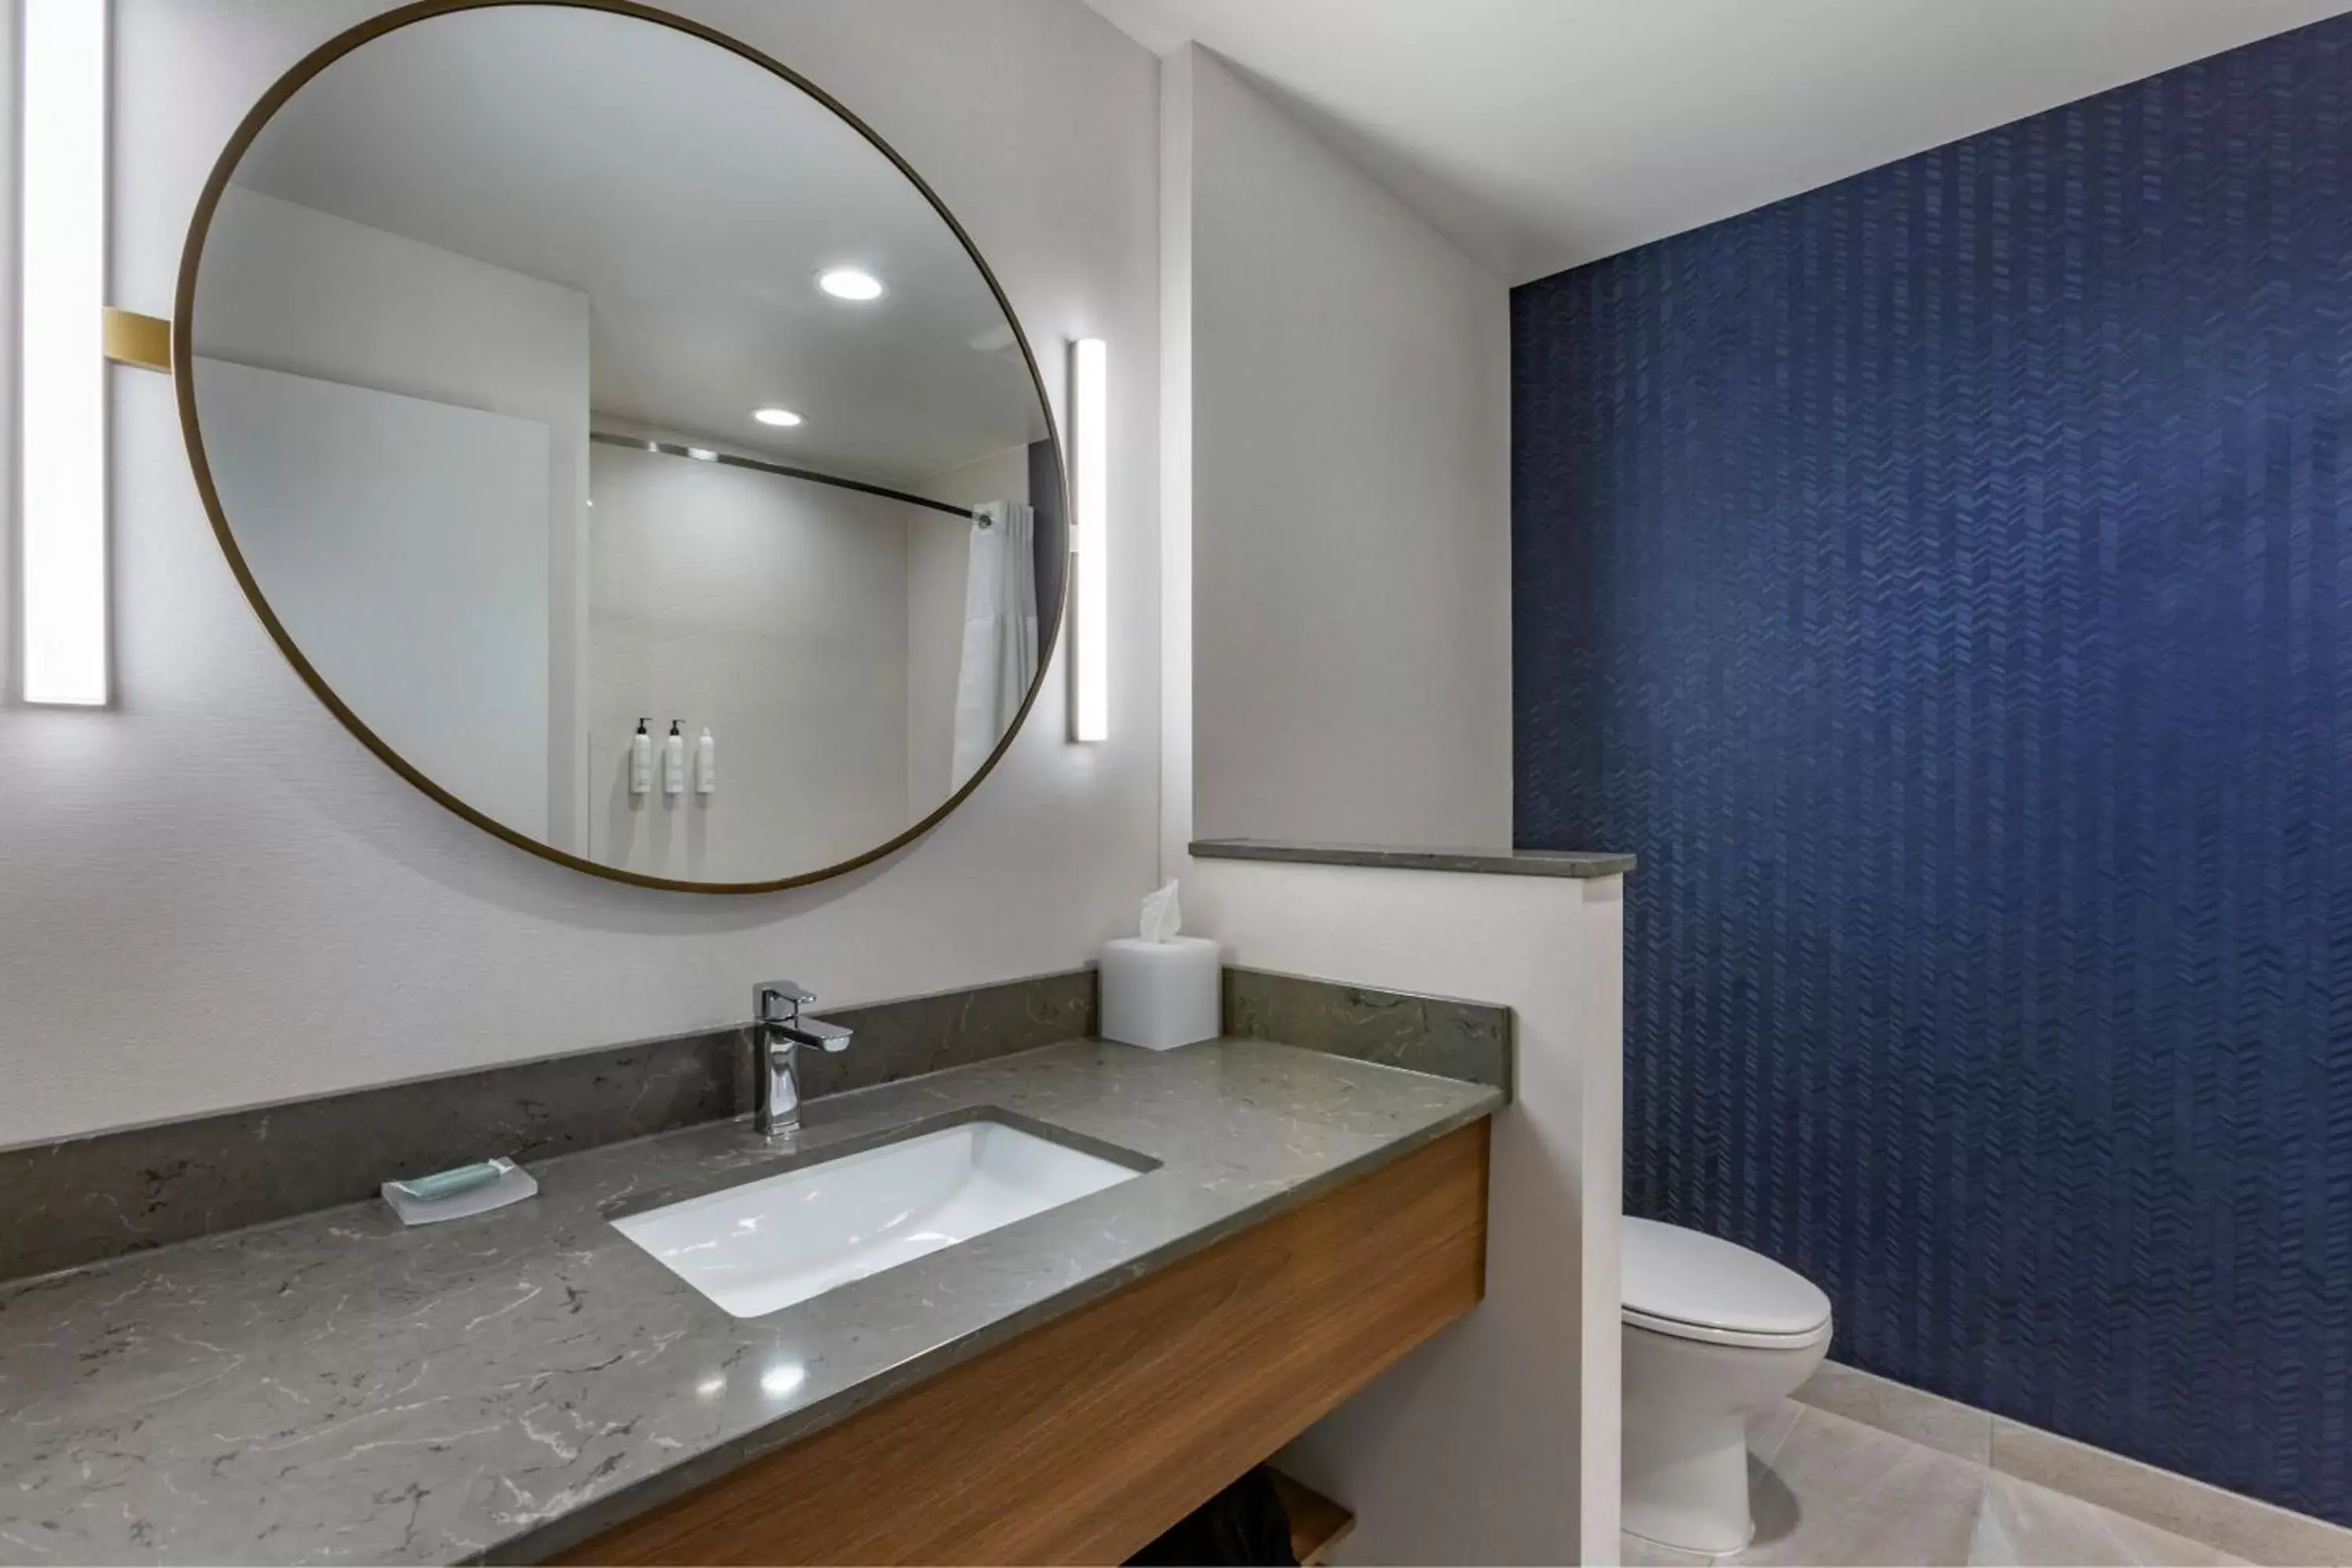 Photo of the whole room, Bathroom in Fairfield by Marriott Inn & Suites Sandusky